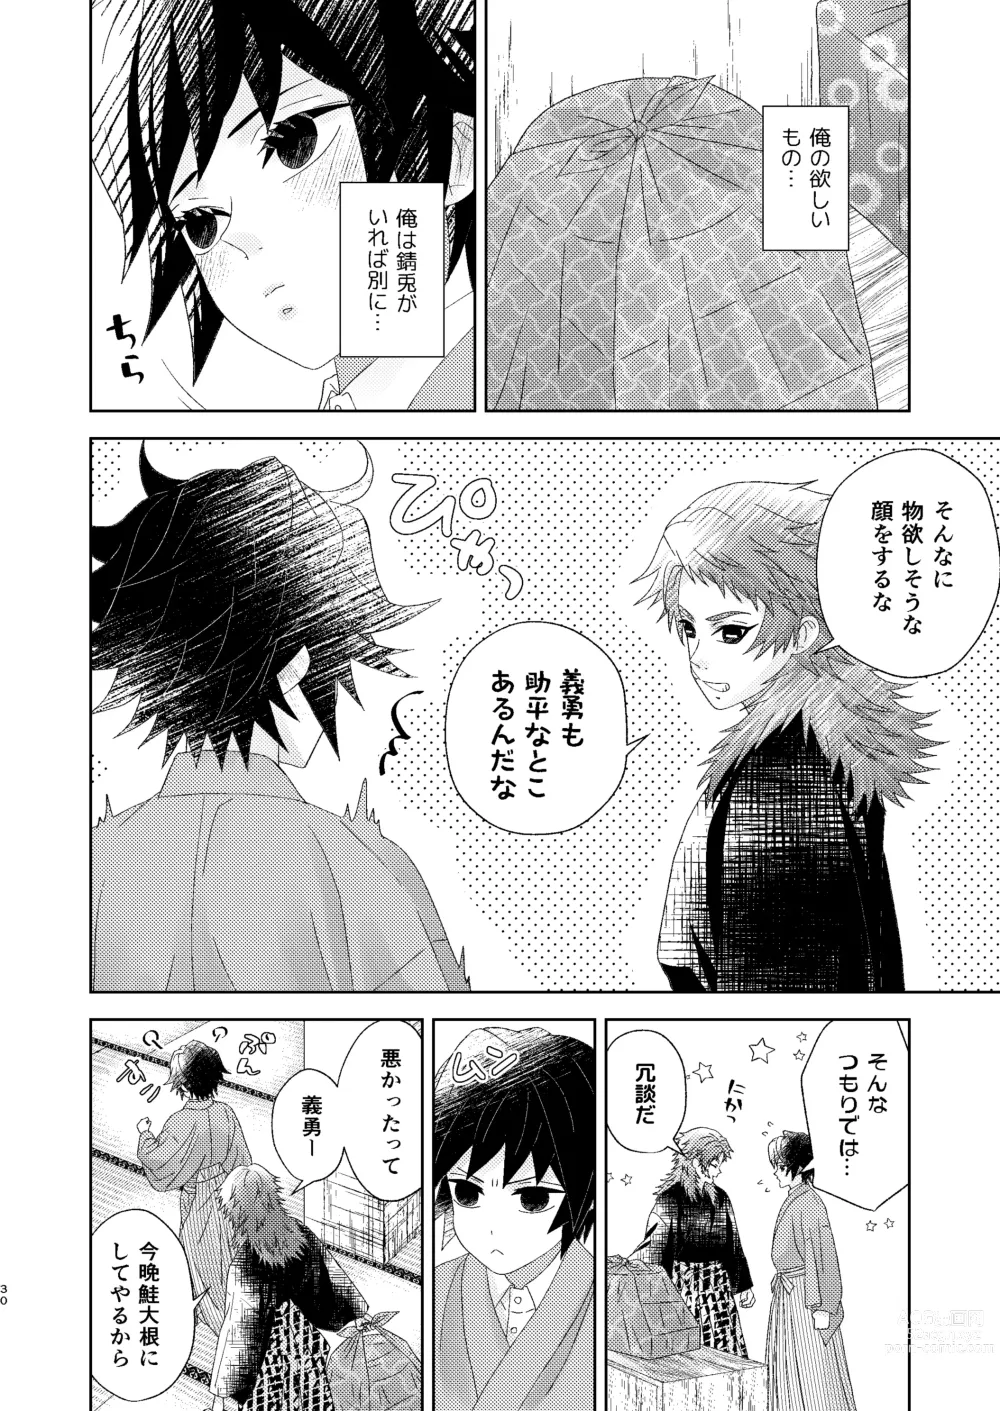 Page 29 of doujinshi Yuurei Kareshi no Koiwazurai